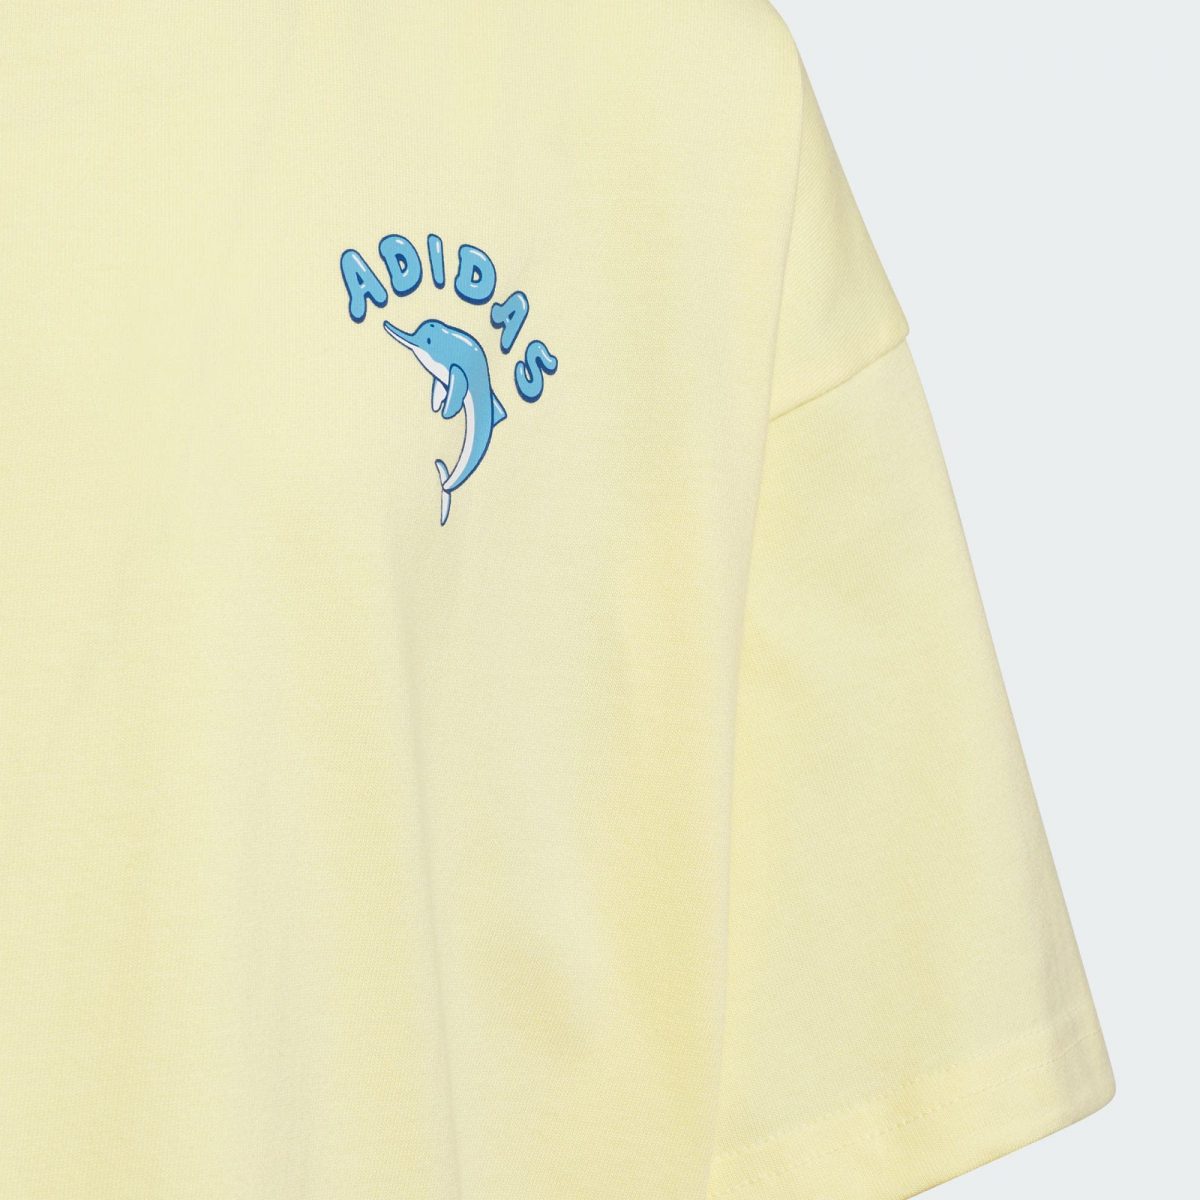 Детская футболка adidas PEMSLOU AP COTTON T-SHIRT